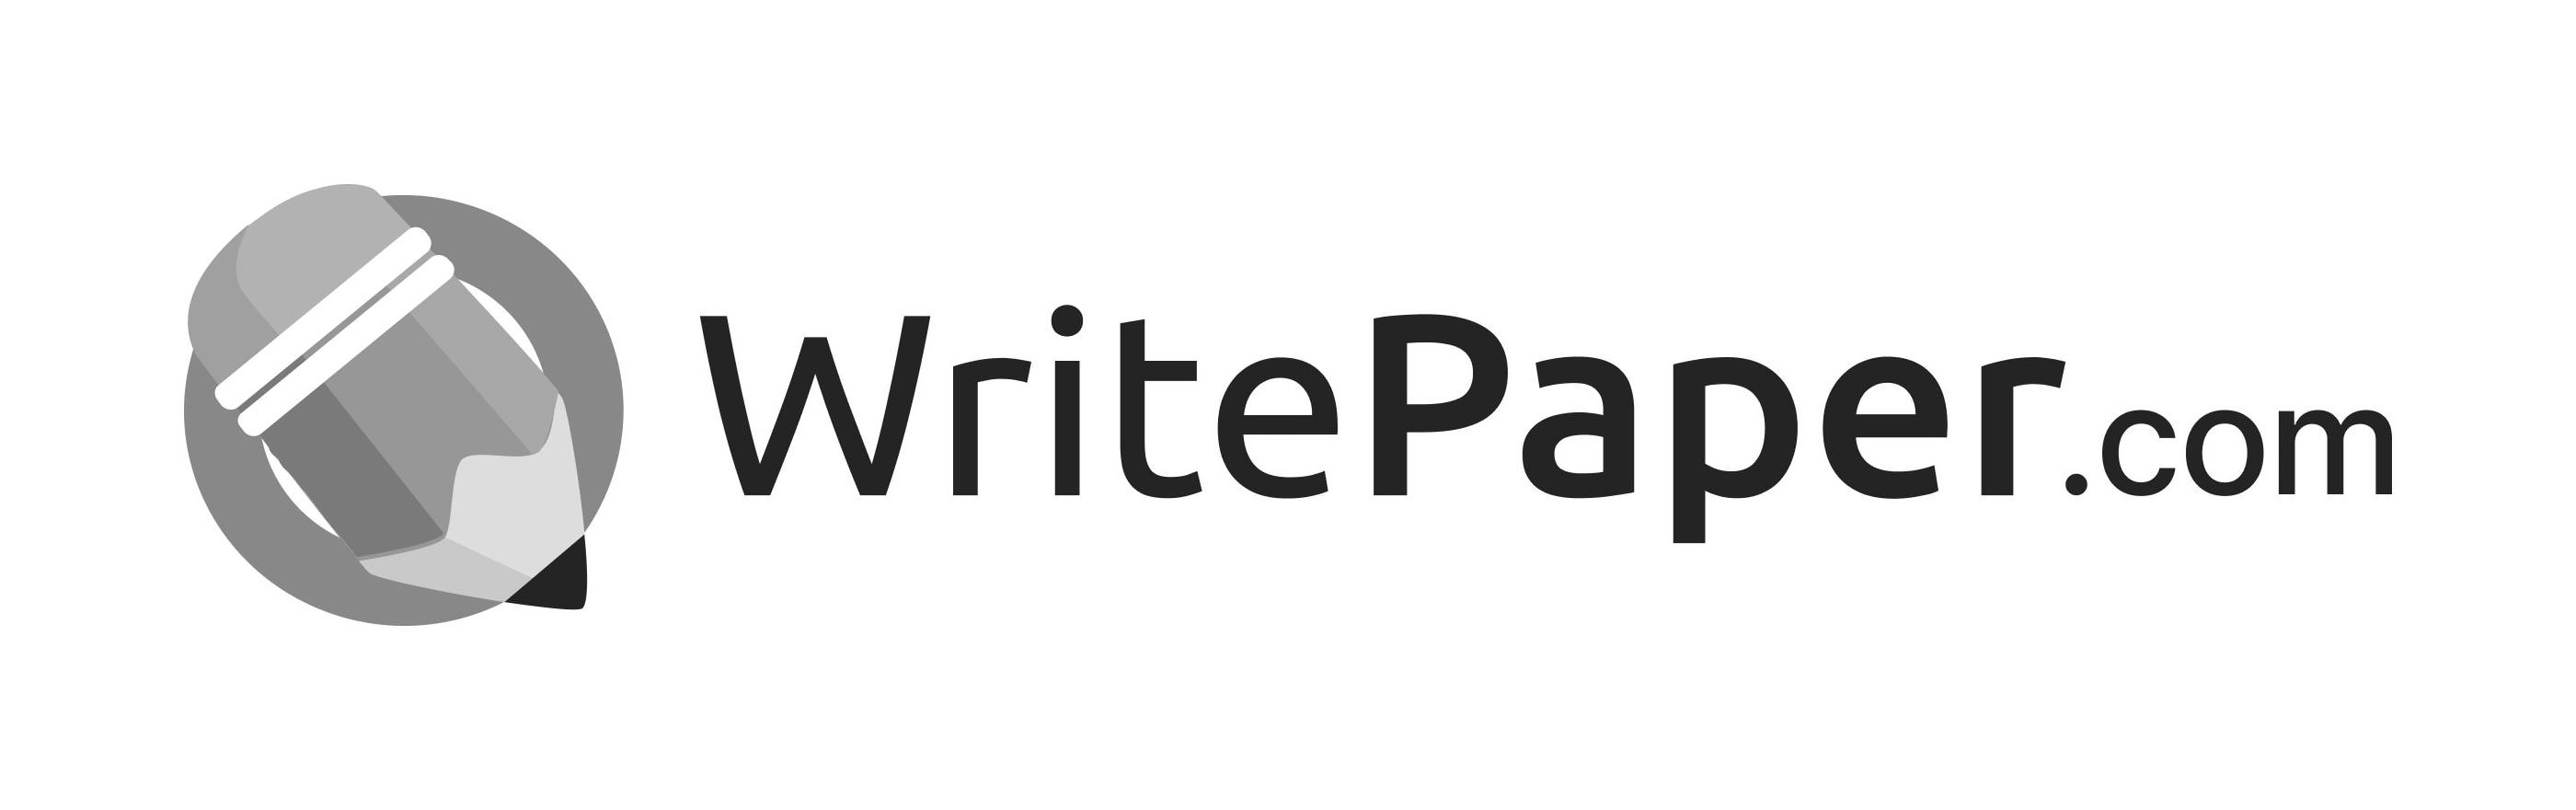  WRITEPAPER.COM